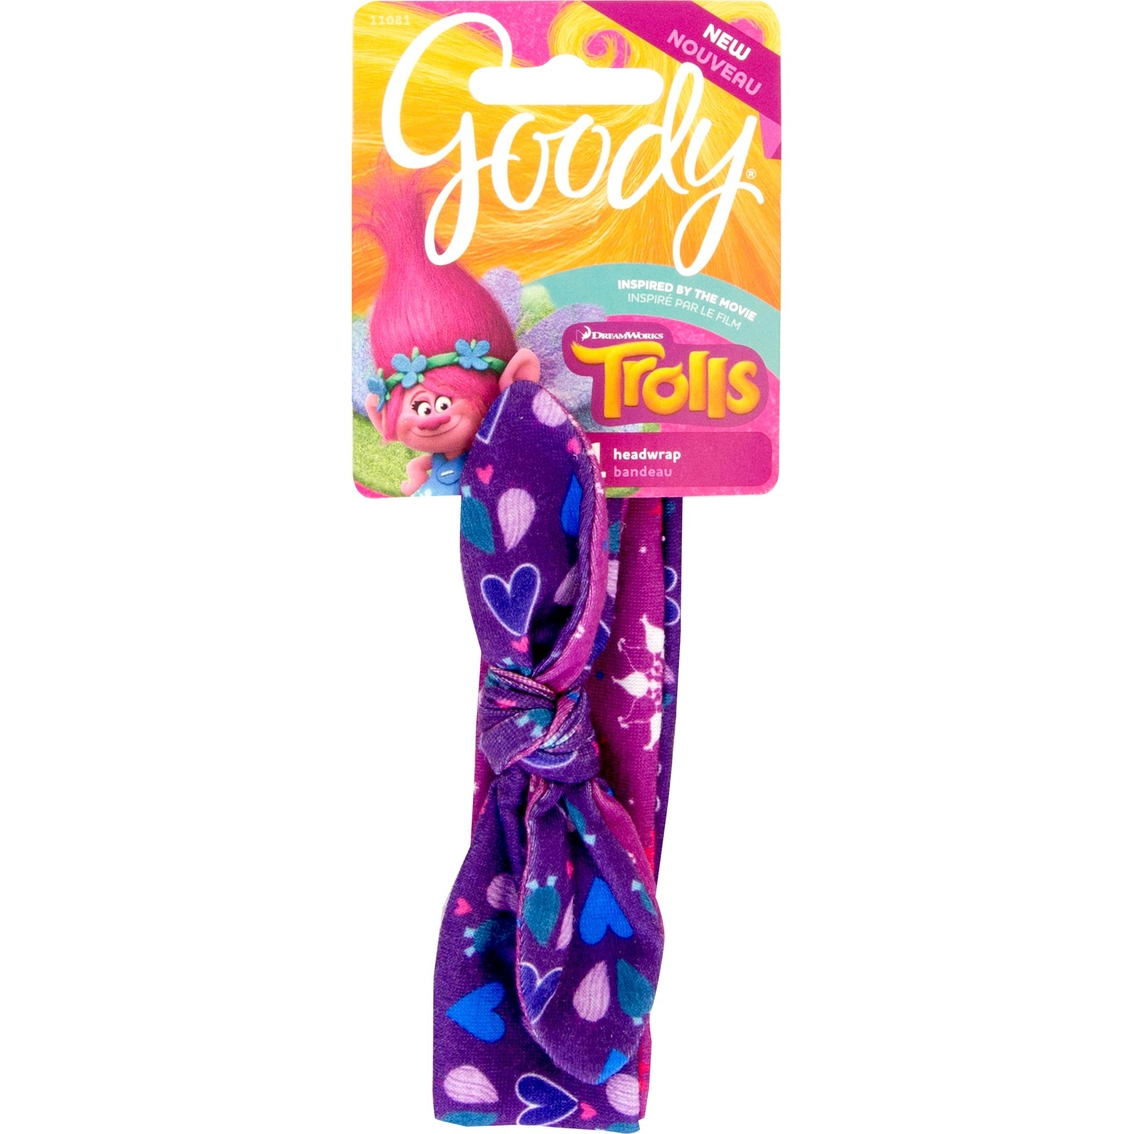 Goody Trolls Fashion Bow Headwrap, 1 CT